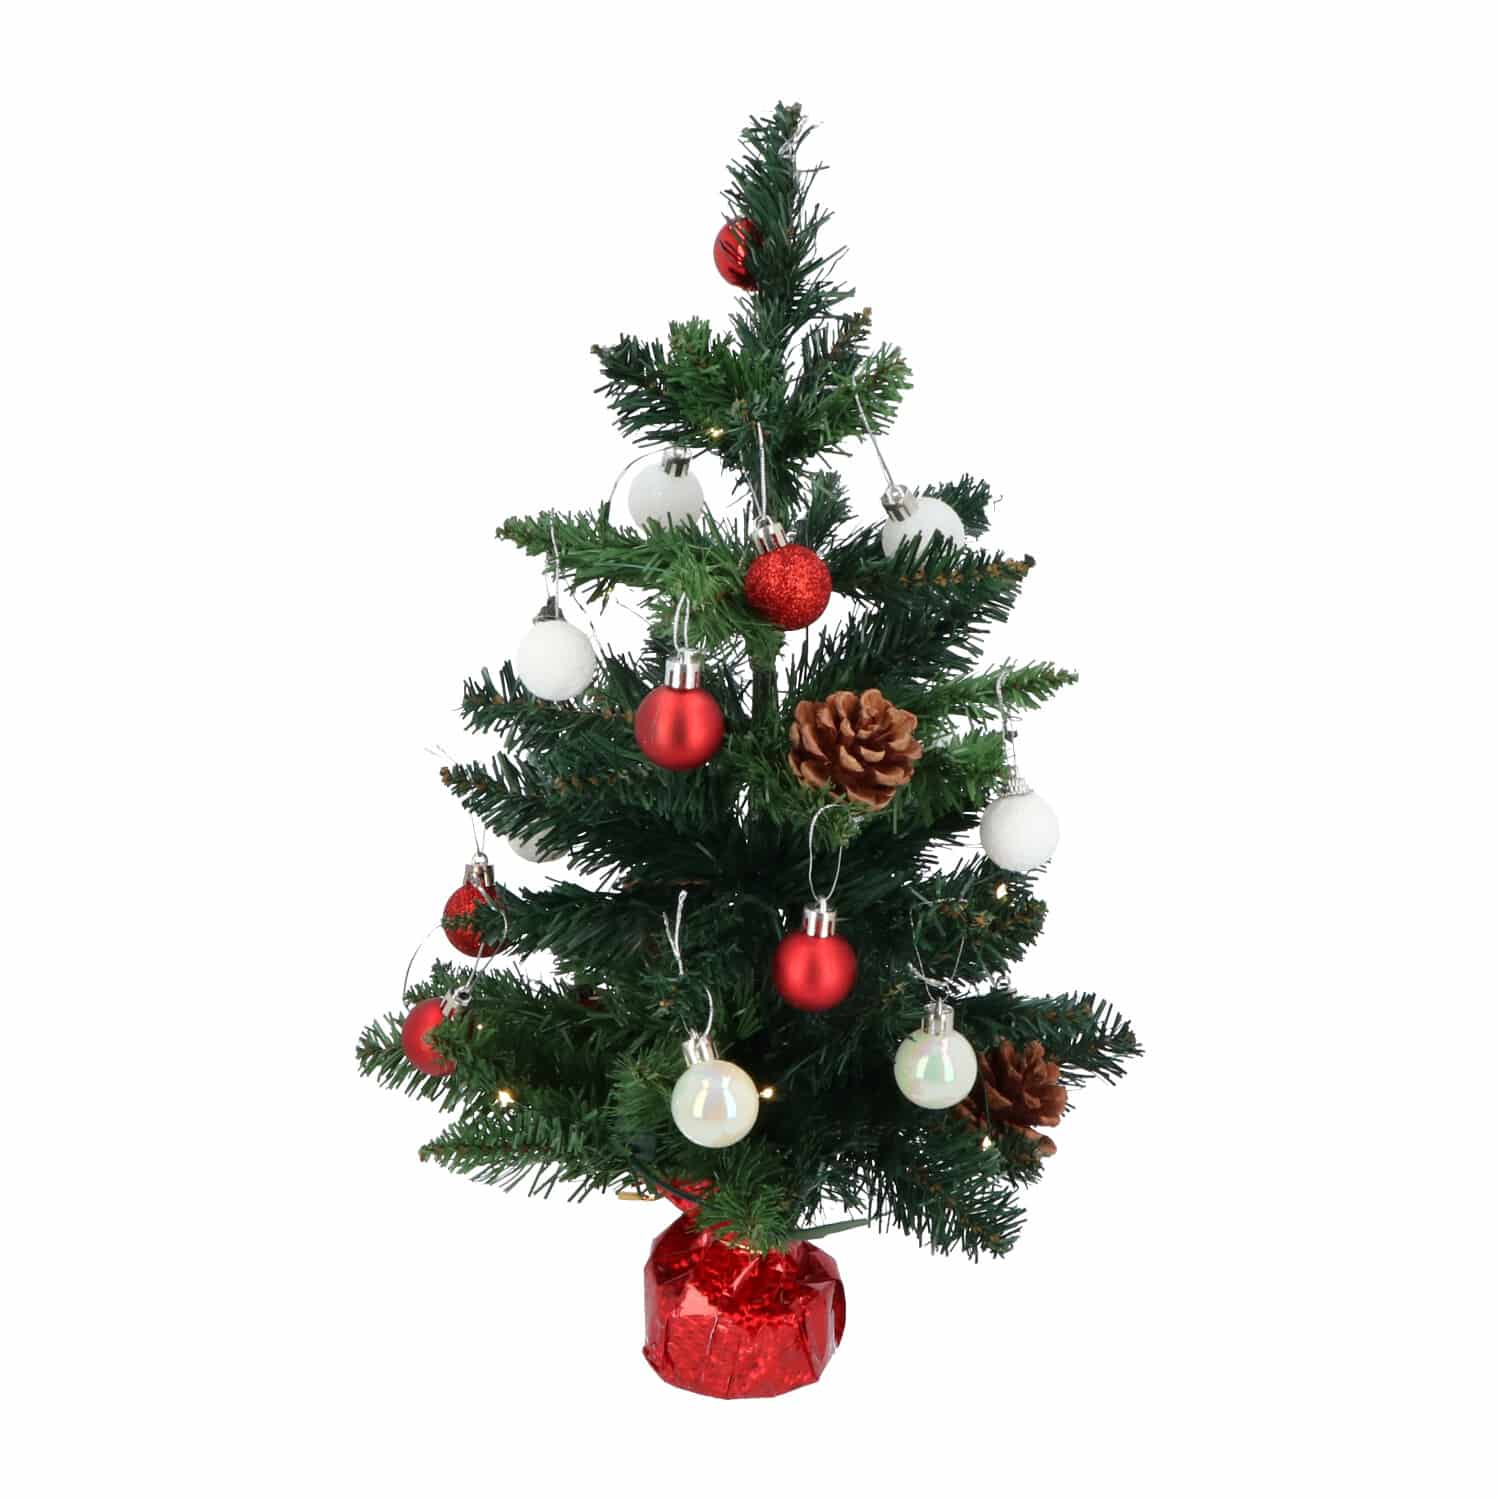 4goodz kunstkerstboom met licht en versiering 50cm hoog - Rood/Wit